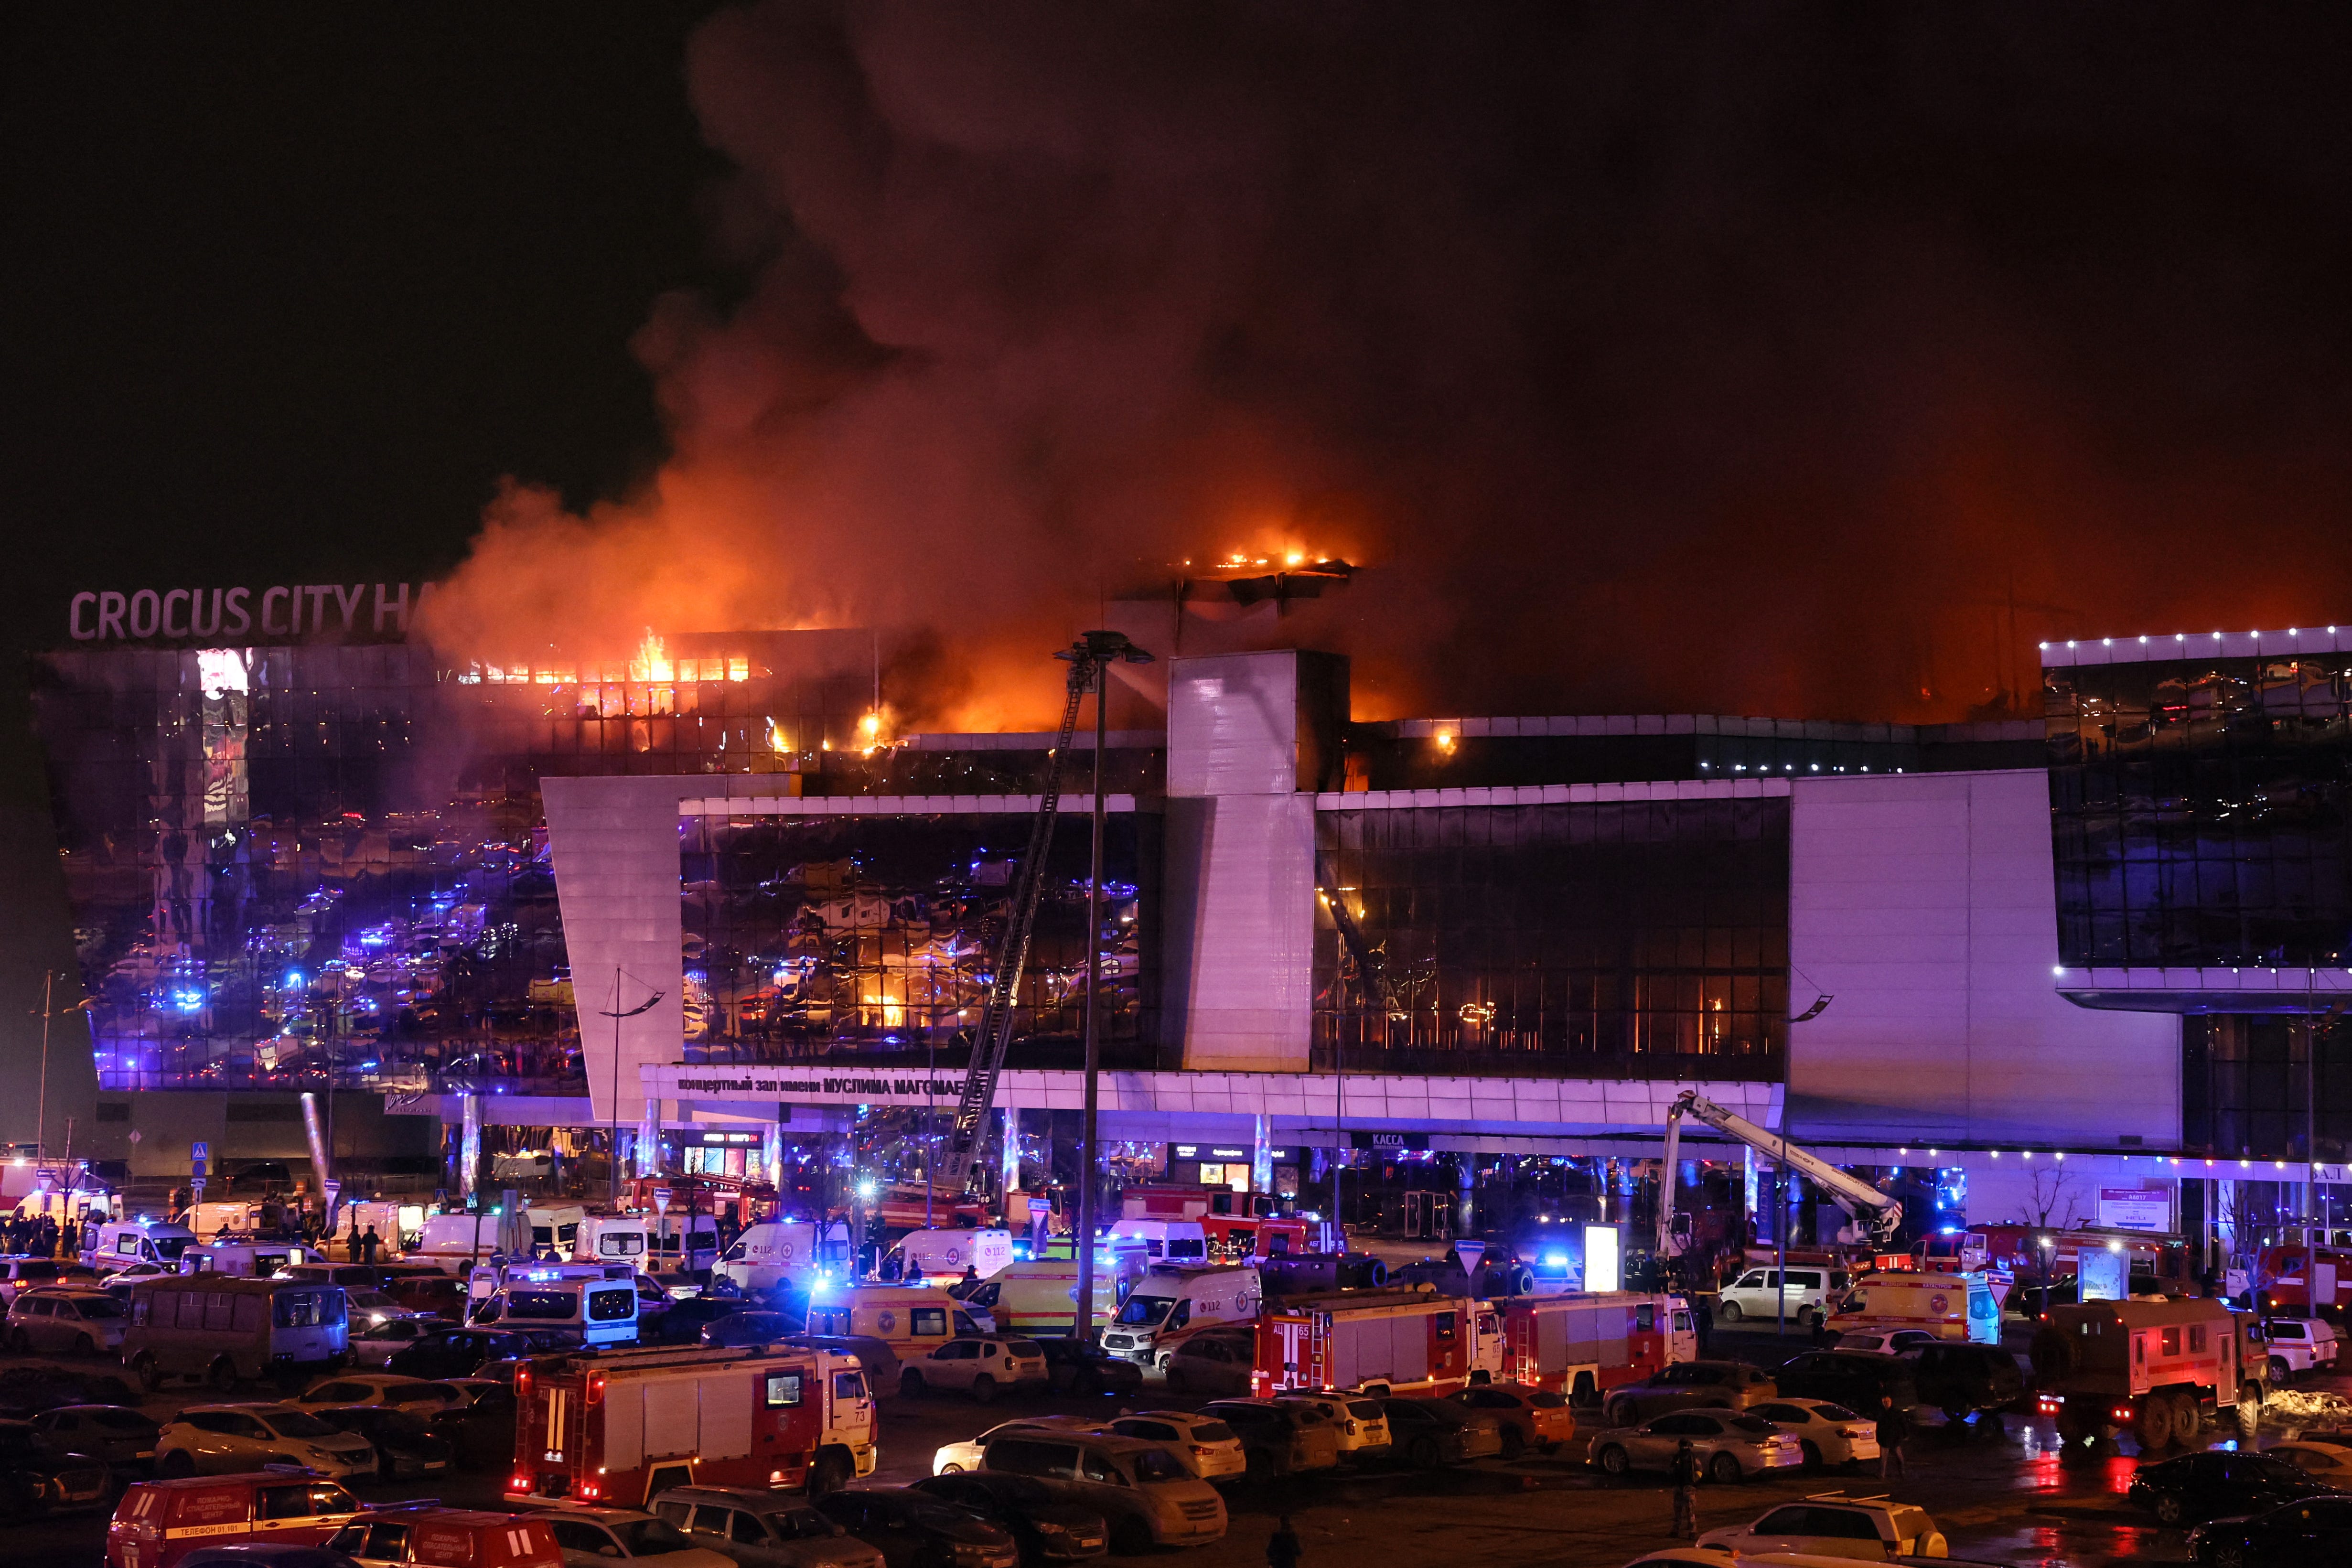 Nach der Schießerei in Krasnogorsk bei Moskau am 22. März 2024 sind Einsatzfahrzeuge vor dem brennenden Konzertsaal des Crocus City Hall zu sehen.